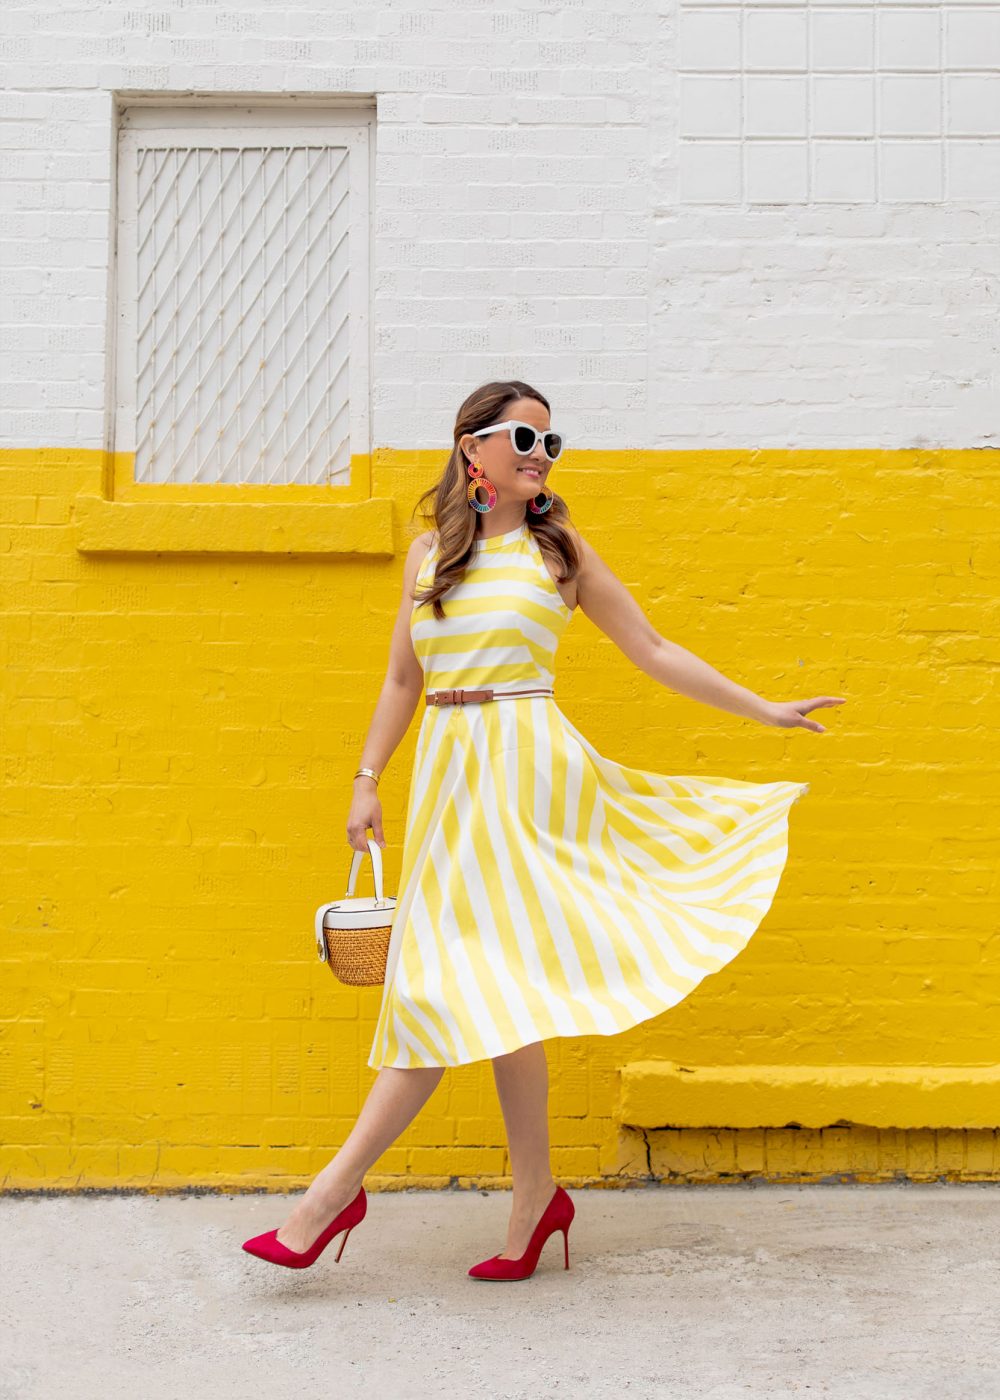 Styling a Yellow Stripe Dress